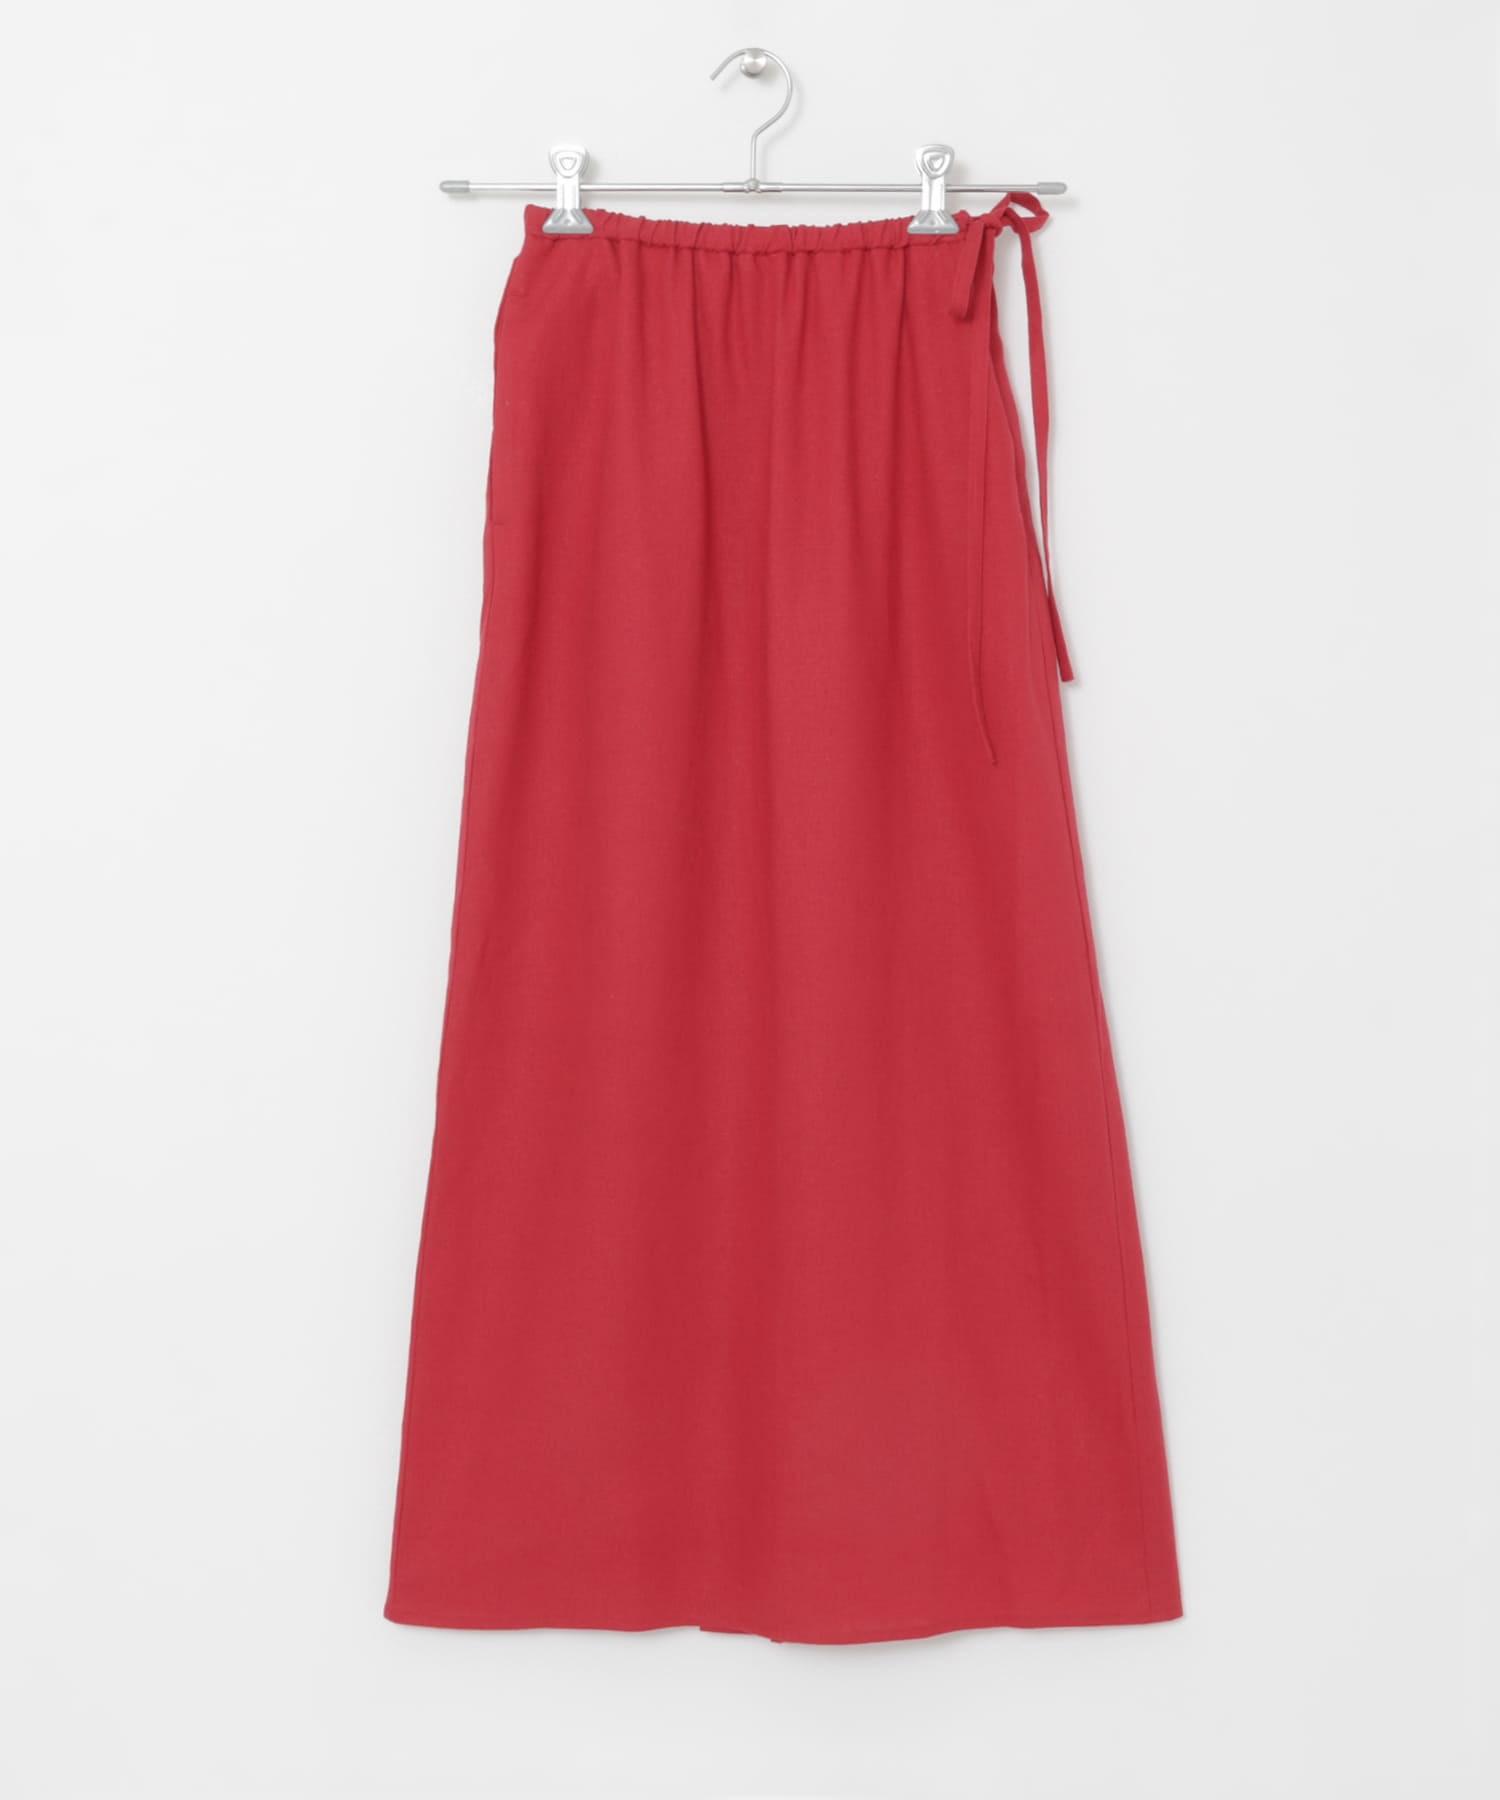 開衩設計蝴蝶結窄裙(紅色-FREE-RED)